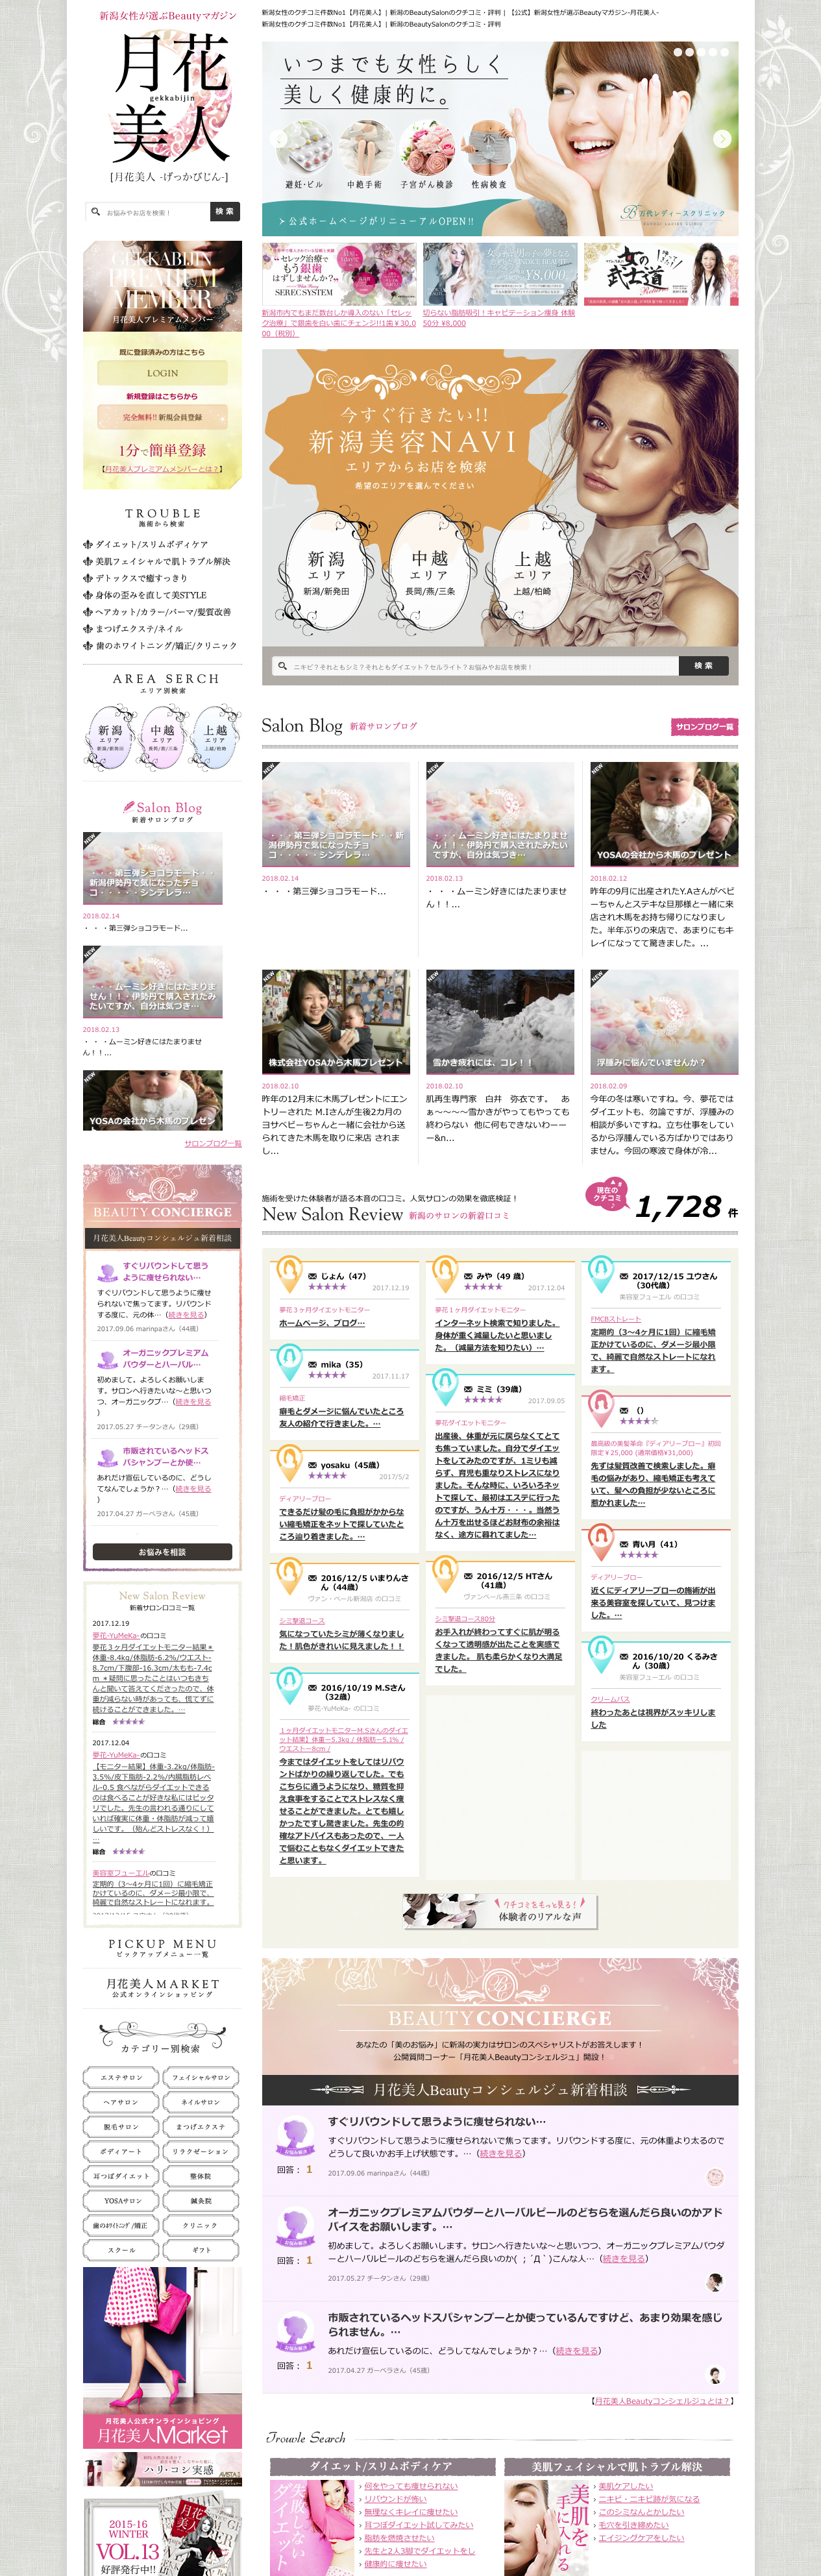 新潟女性が選ぶBeautyマガジン「月花美人」 様ホームページトップ